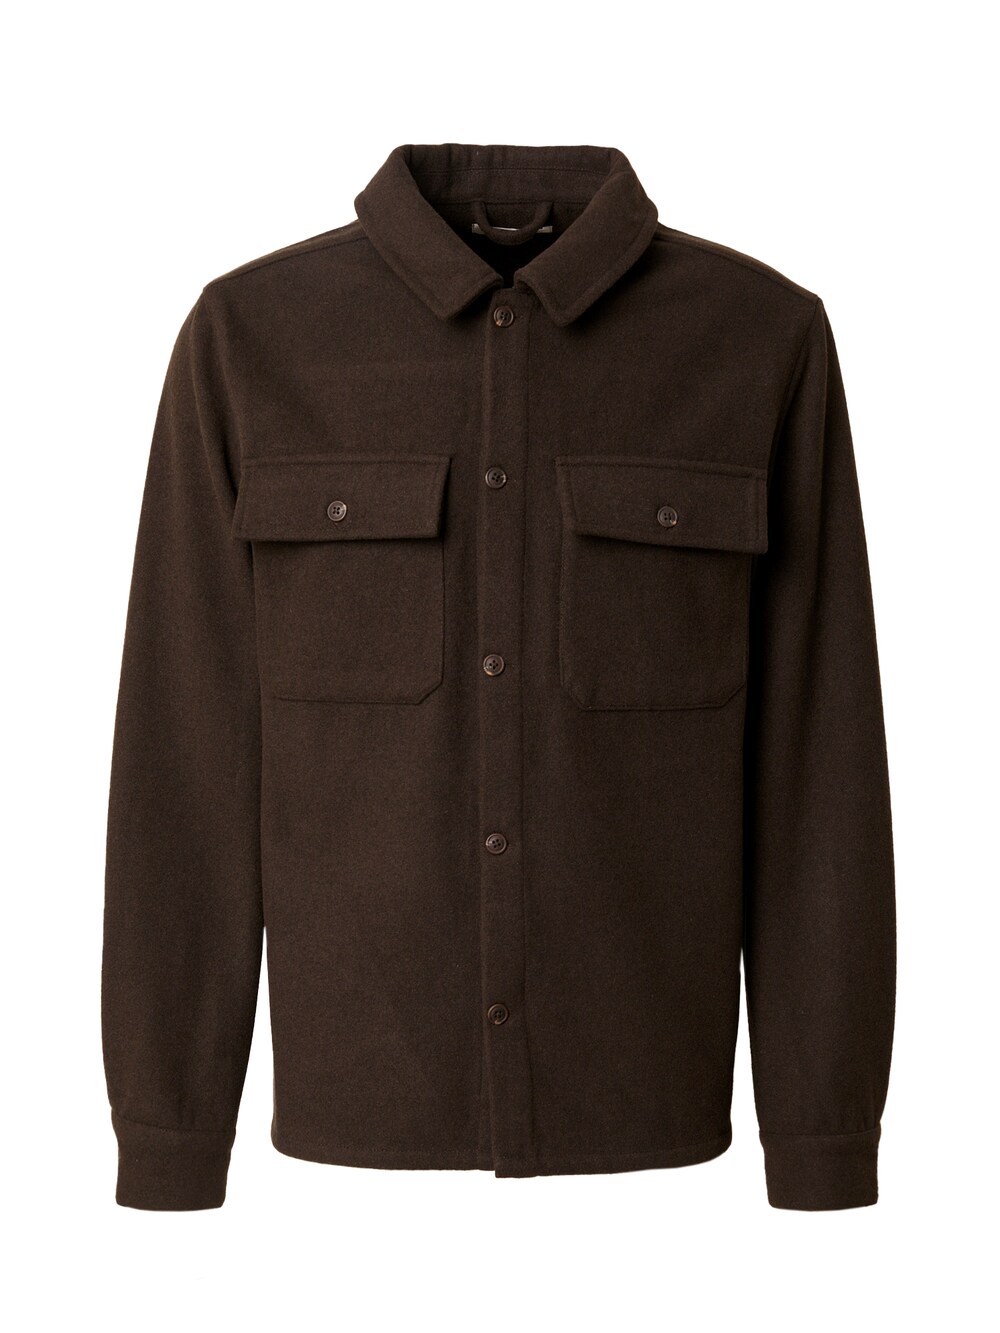 Межсезонная куртка стандартного кроя ABOUT YOU x Jaime Lorente Marco, темно коричневый